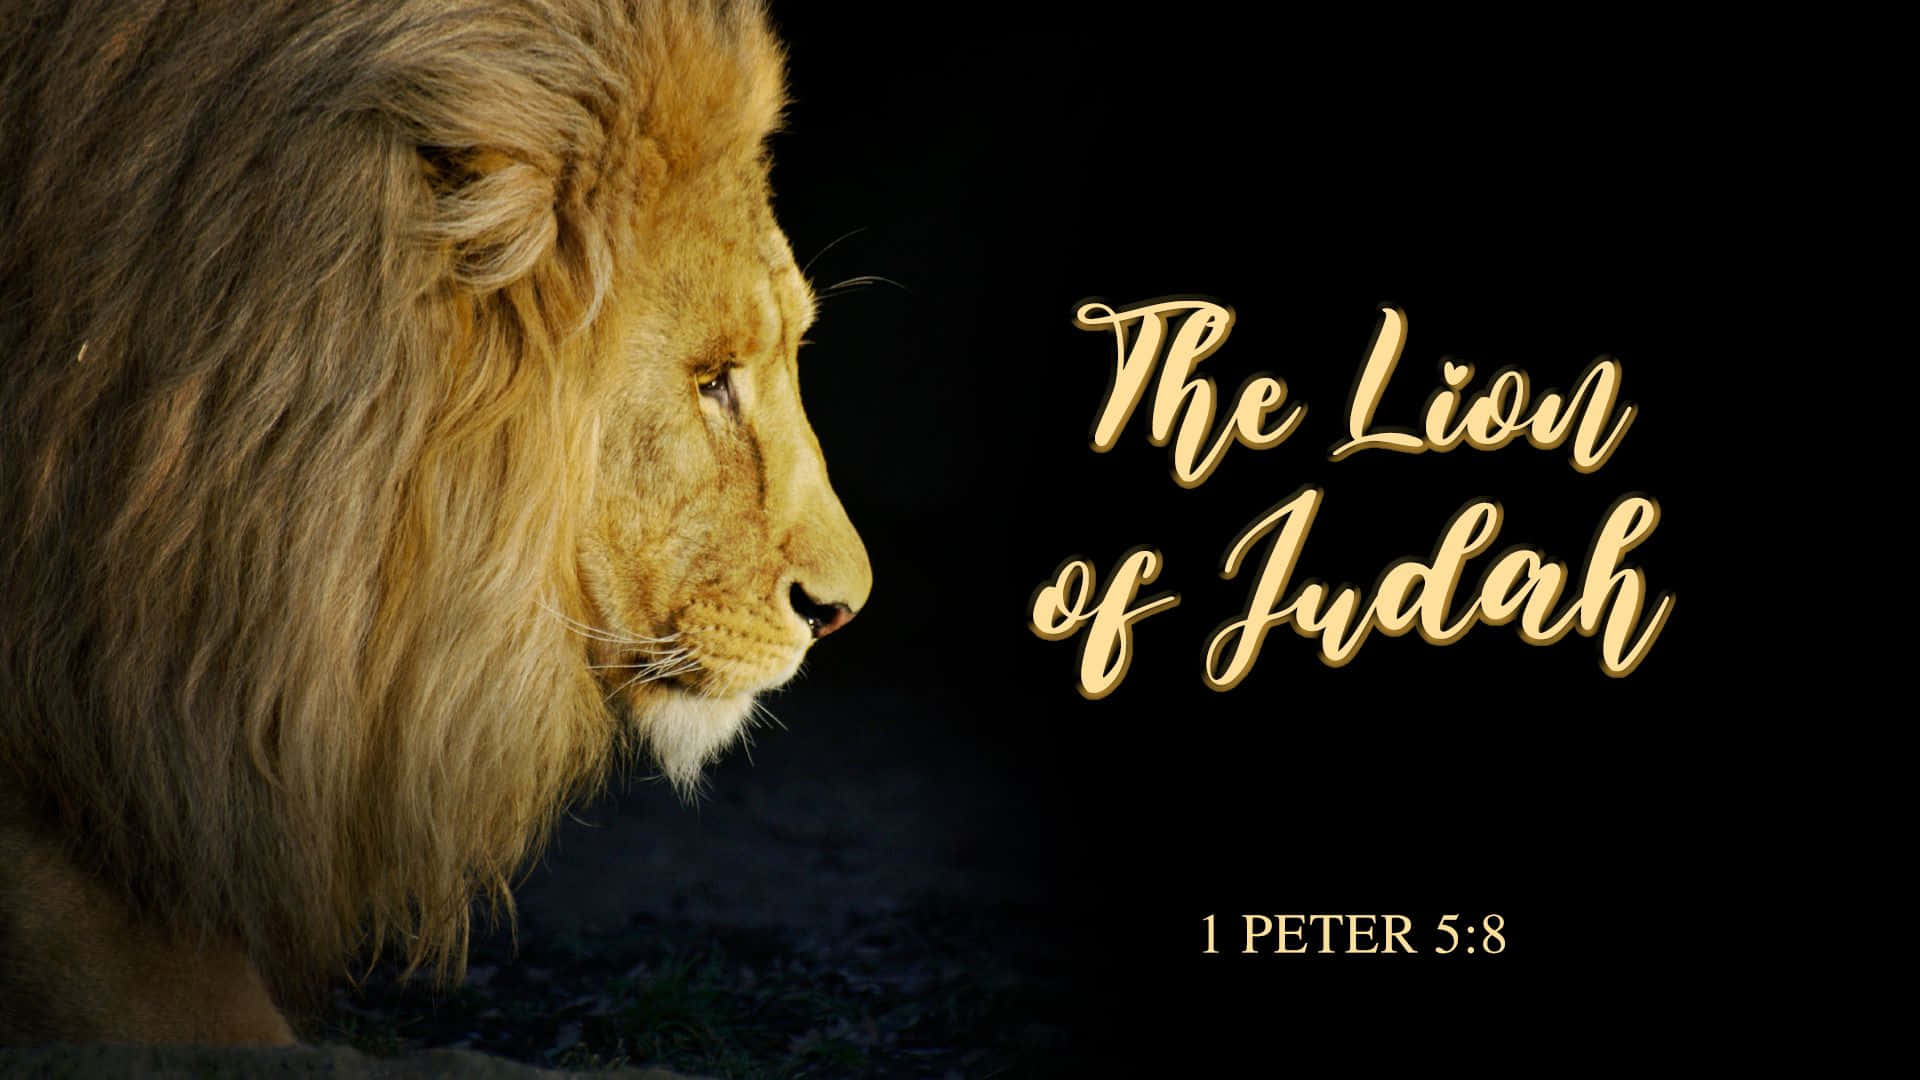 Løven af Judah råber